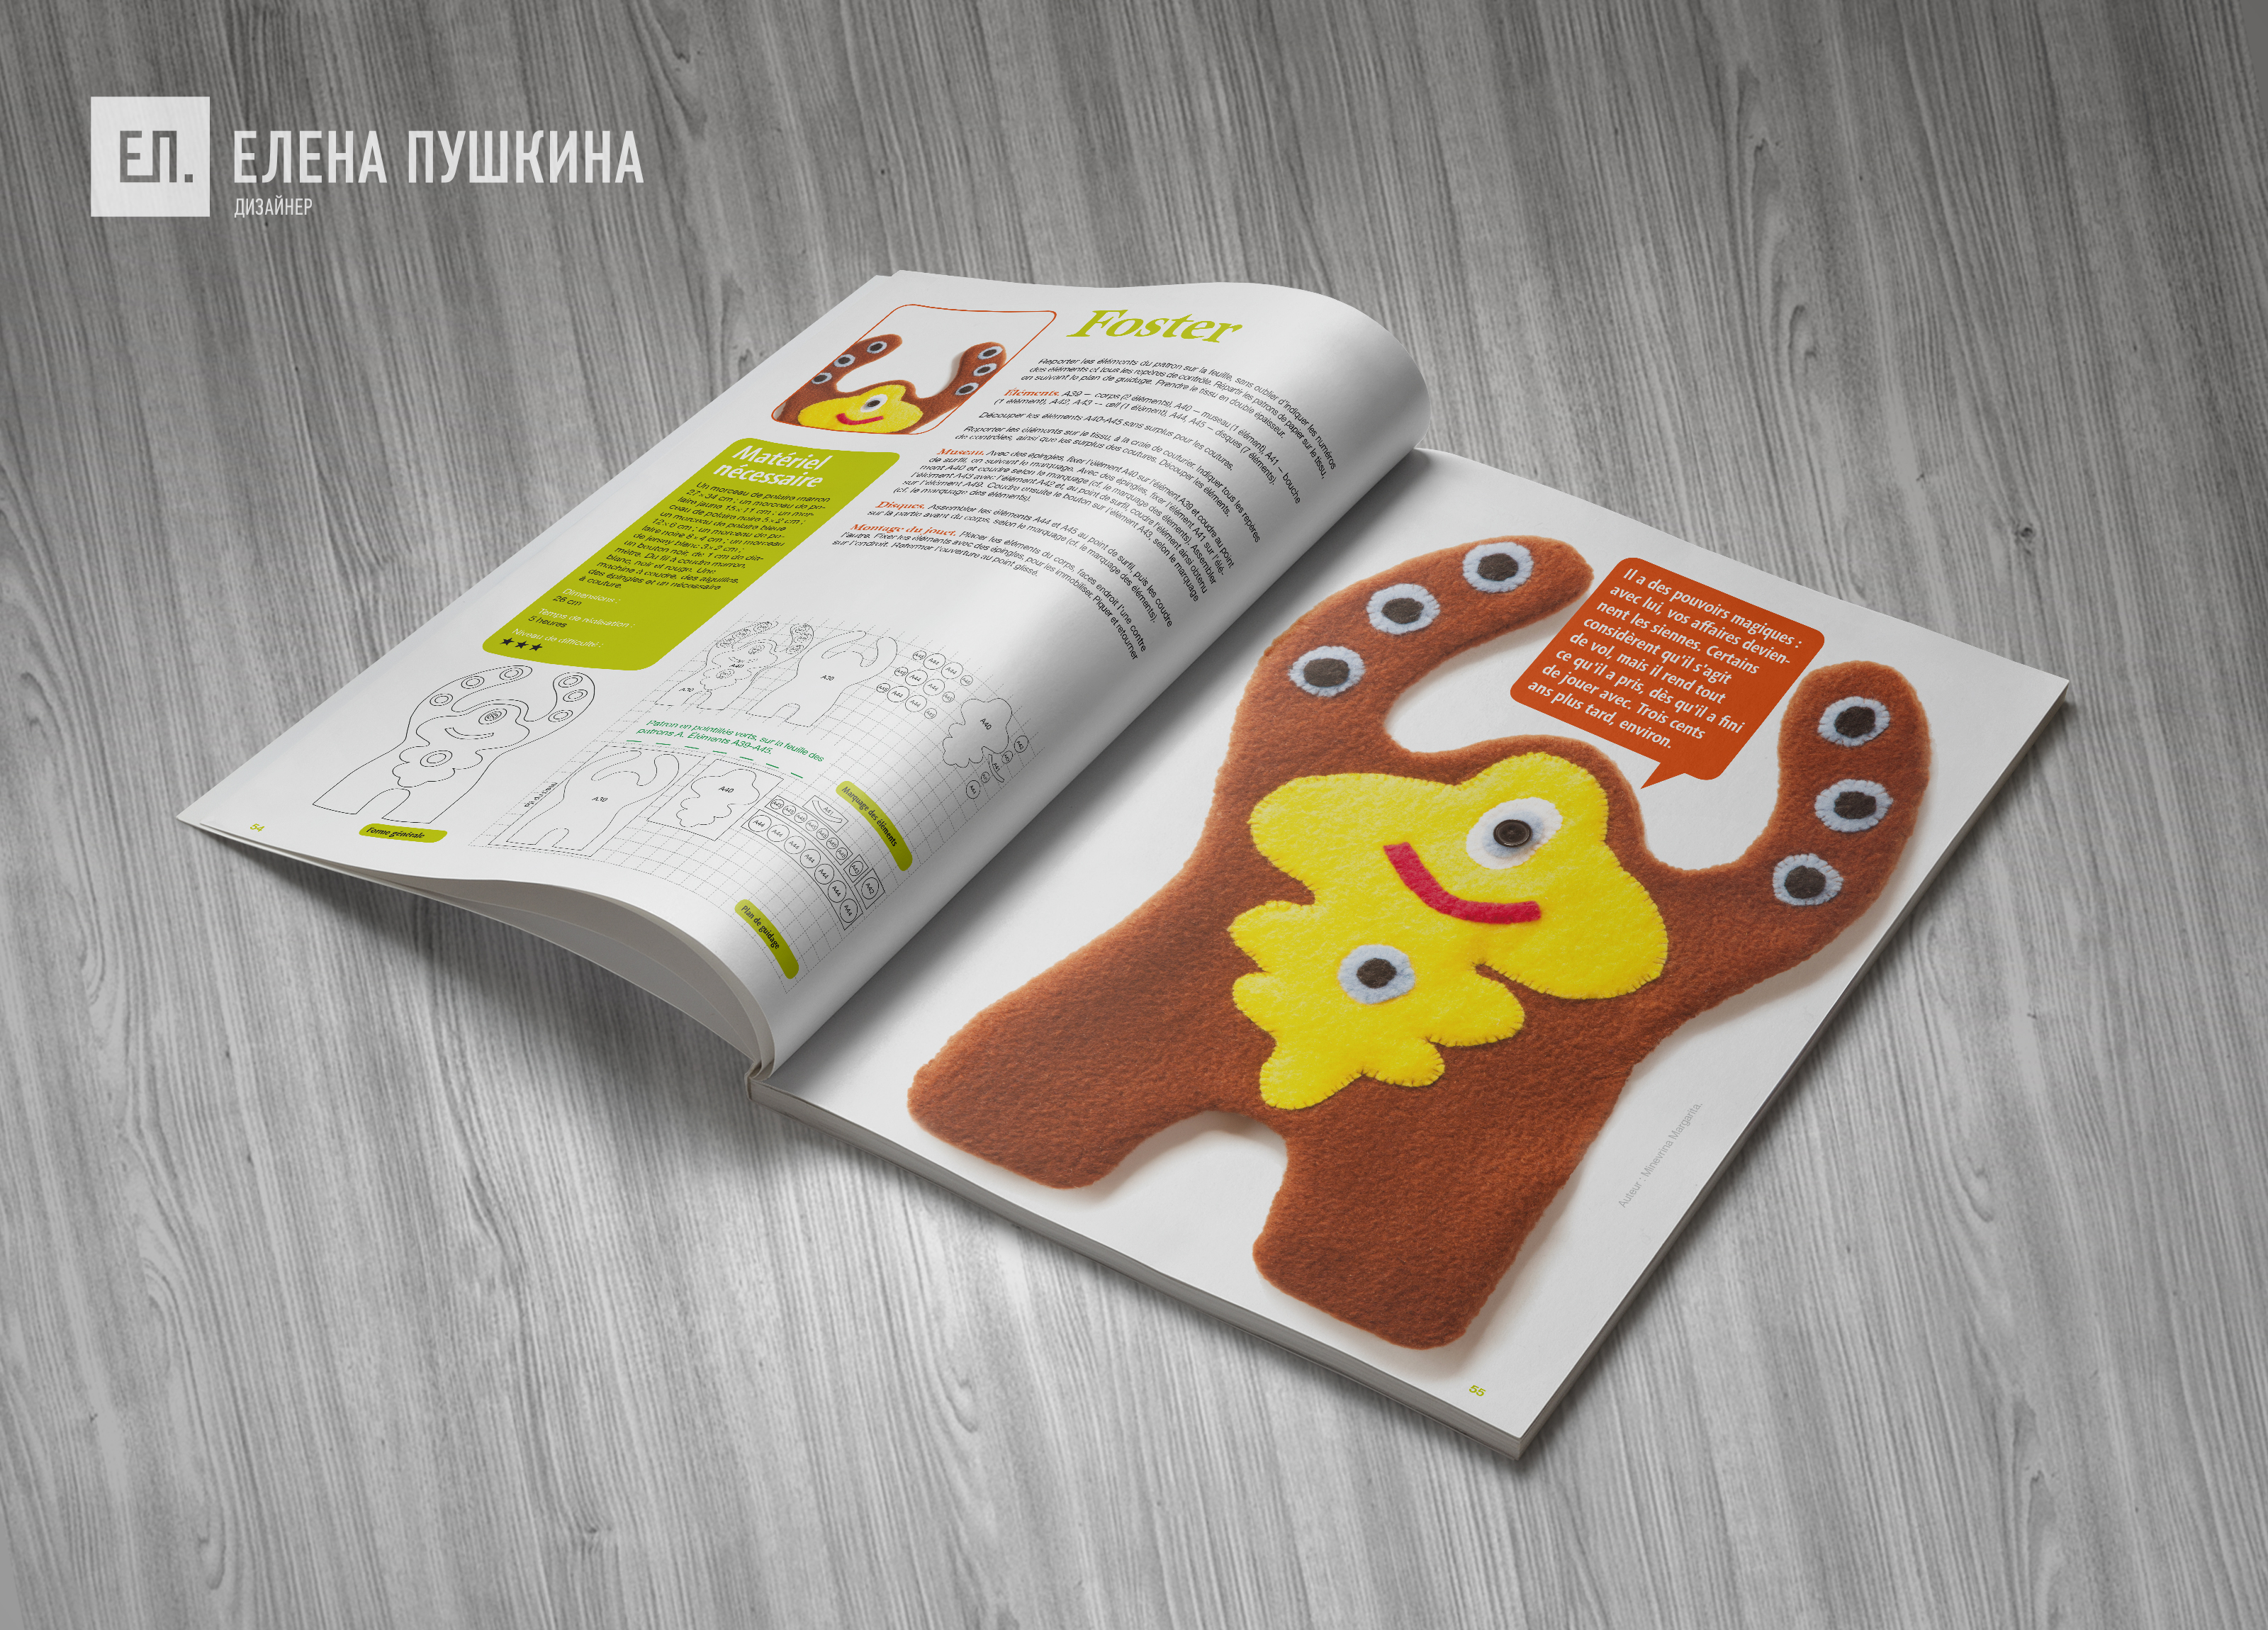 Журнал «Crazy Toys» 2012 для медиа холдинга «Multimedia Press» — разработка дизайна, цветокоррекция и вёрстка журнала Разработка журналов Портфолио